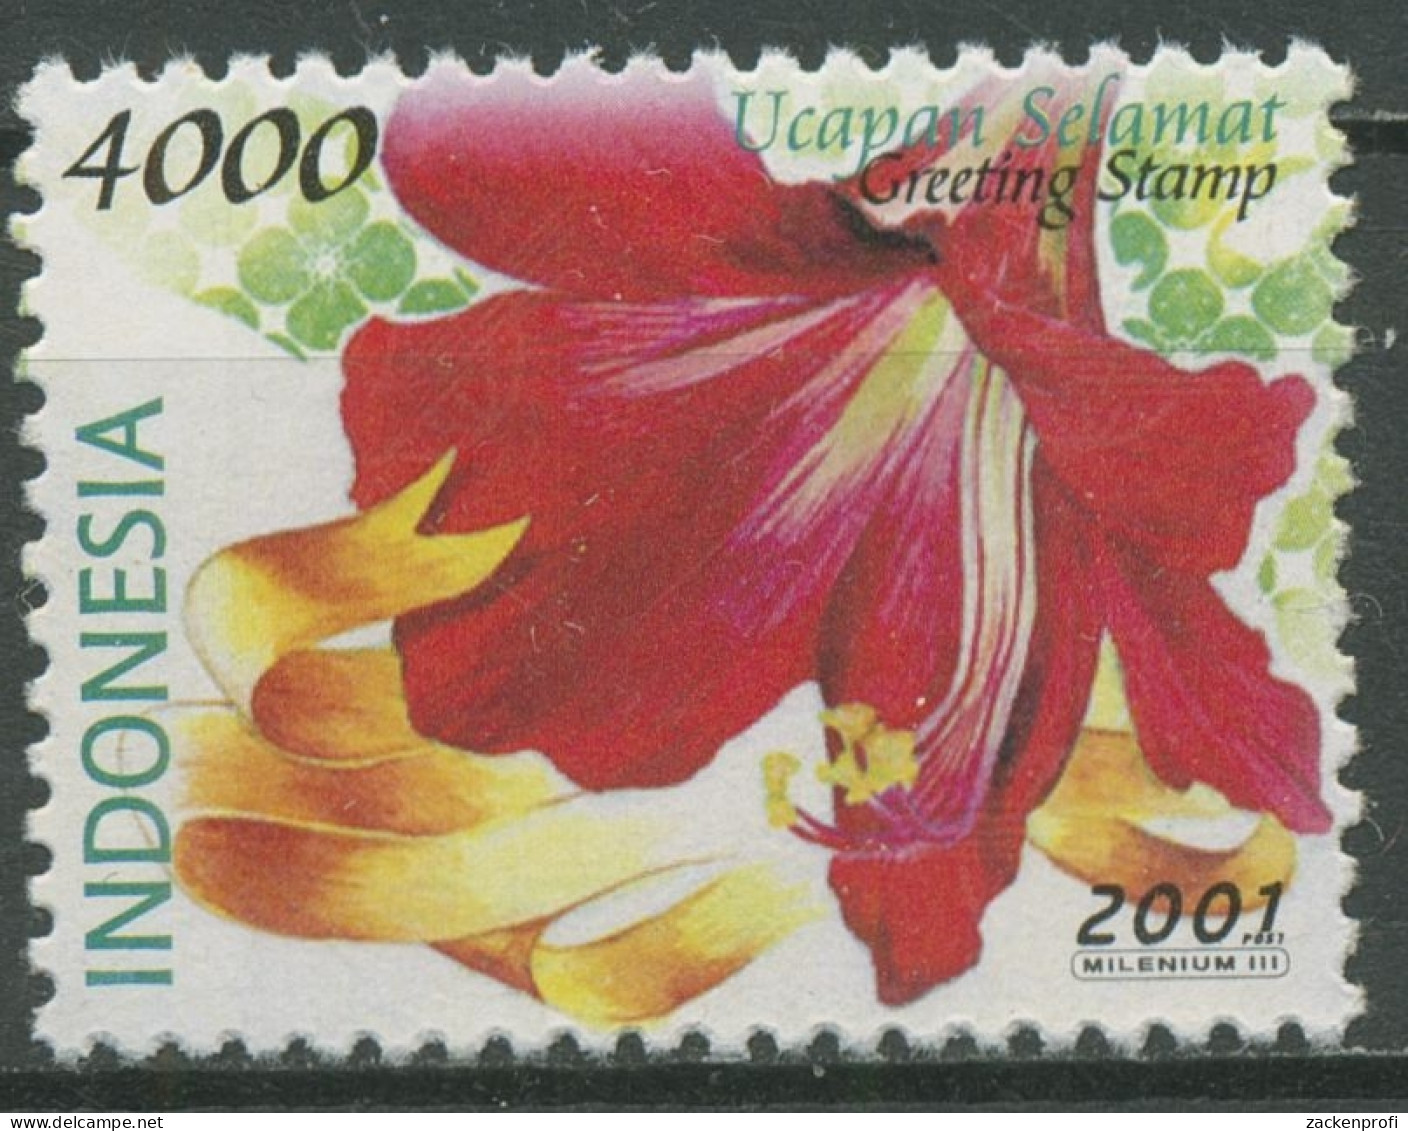 Indonesien 2001 Grußmarken Blumen Amaryllis 2106 Postfrisch - Indonésie